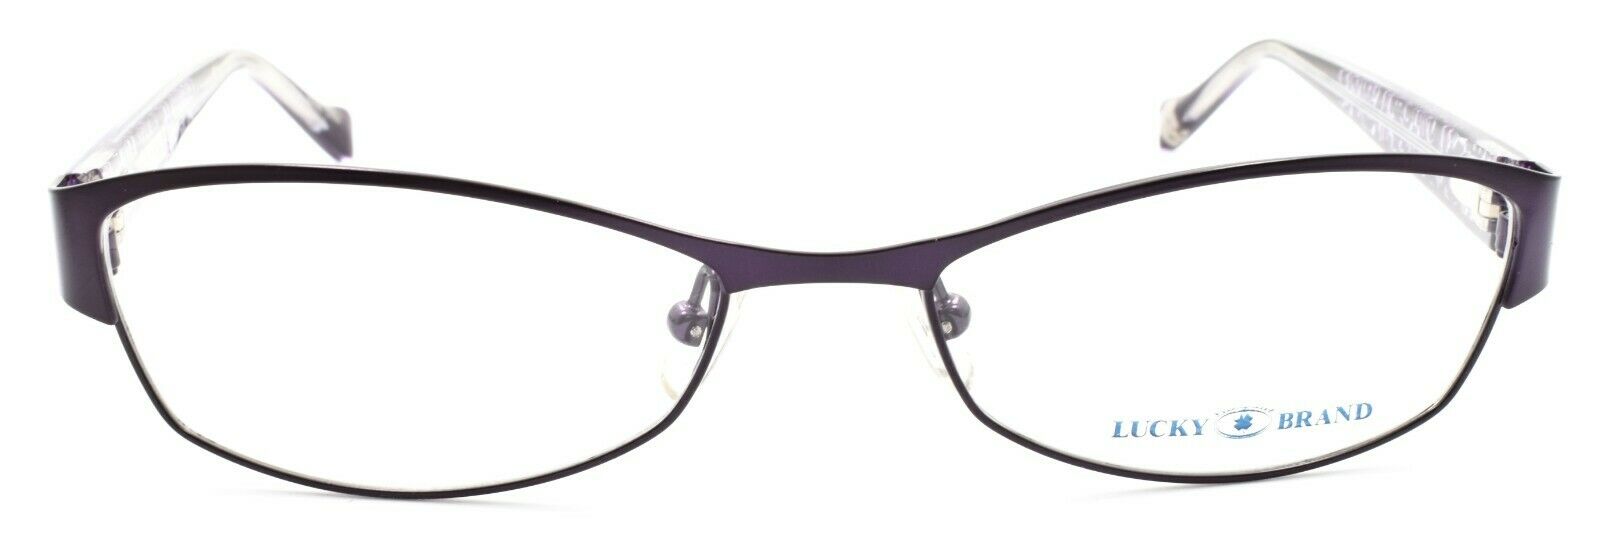 2-LUCKY BRAND Delilah Women's Eyeglasses Frames 52-16-135 Purple + CASE-751286205350-IKSpecs